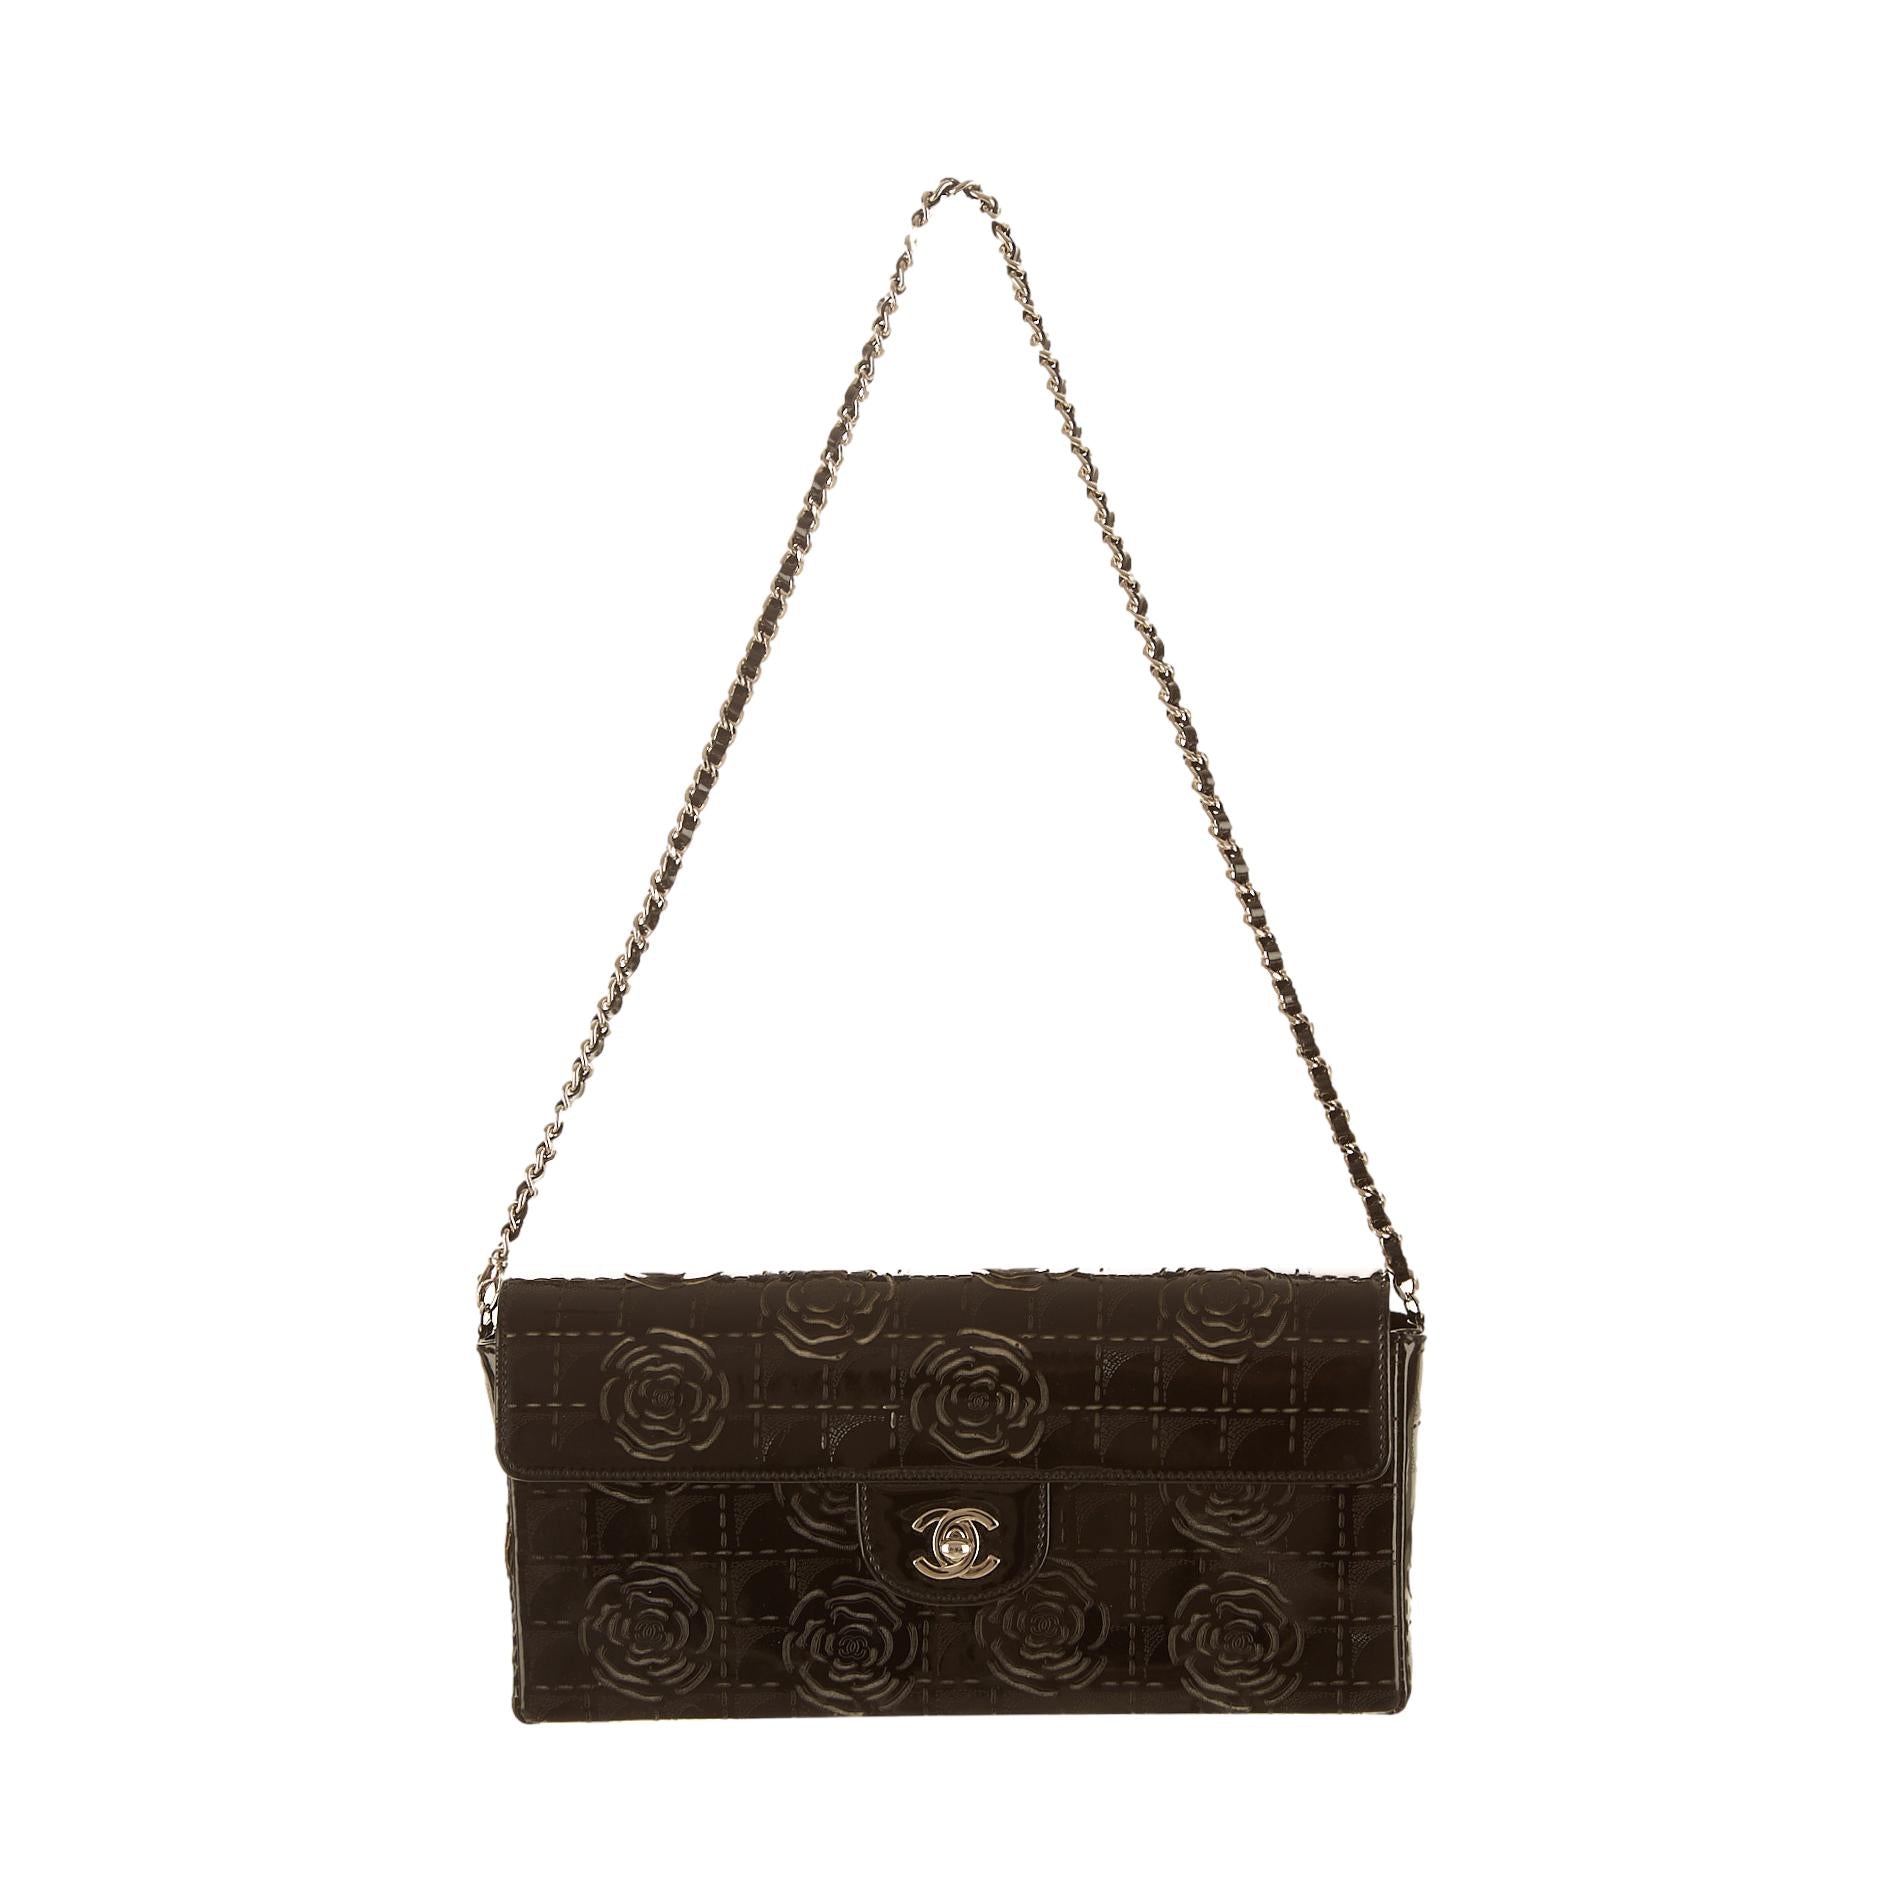 Chanel Black Floral Chain Shoulder Bag